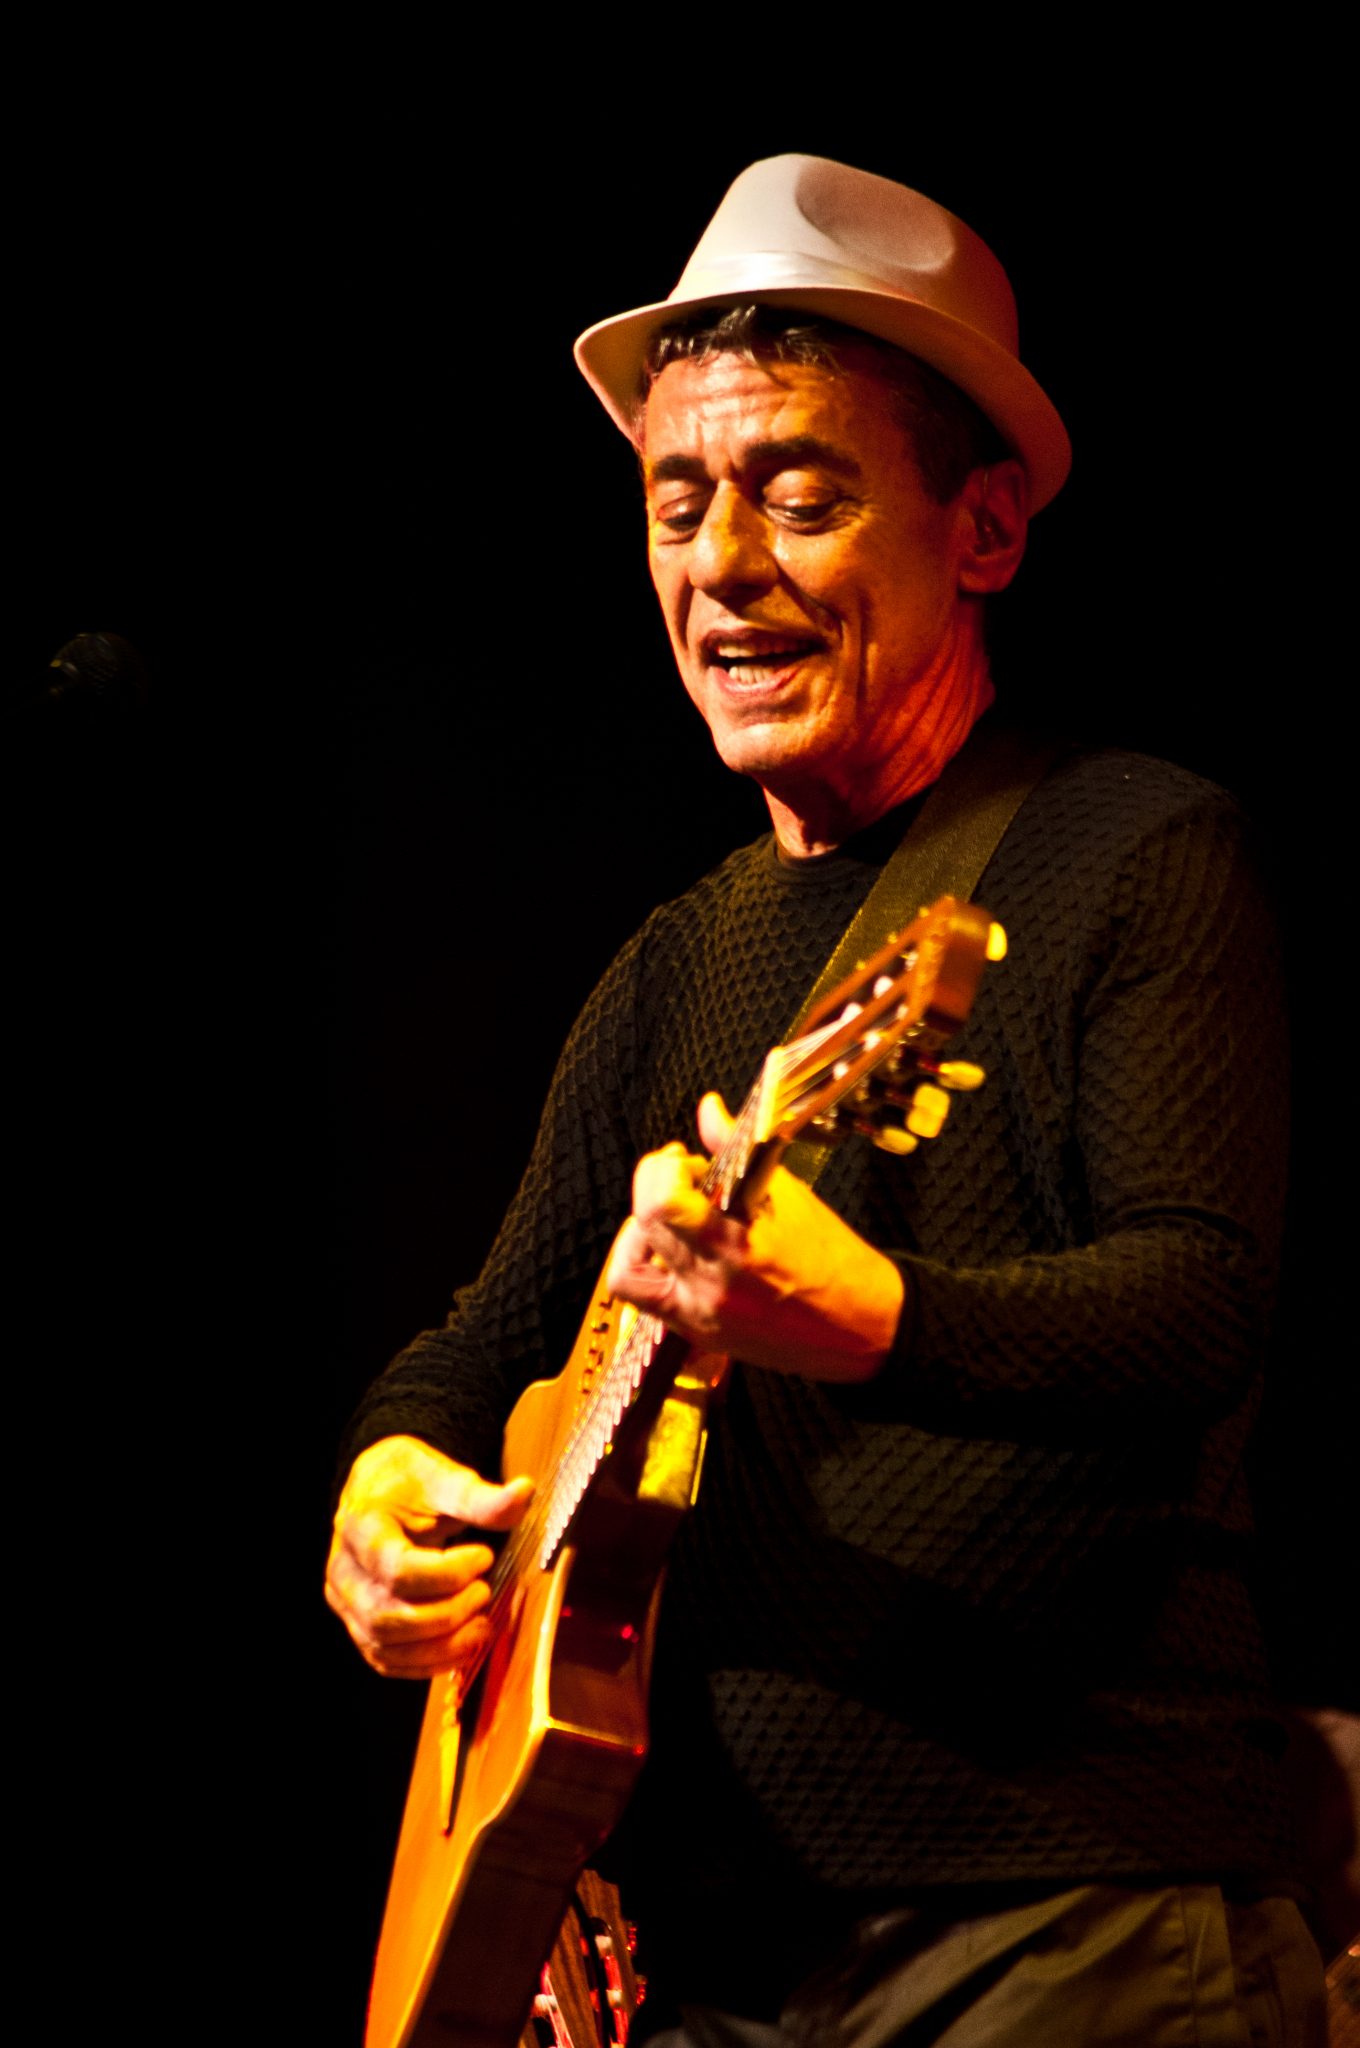 fotografía del artista Chico Buarque tocando guitarra